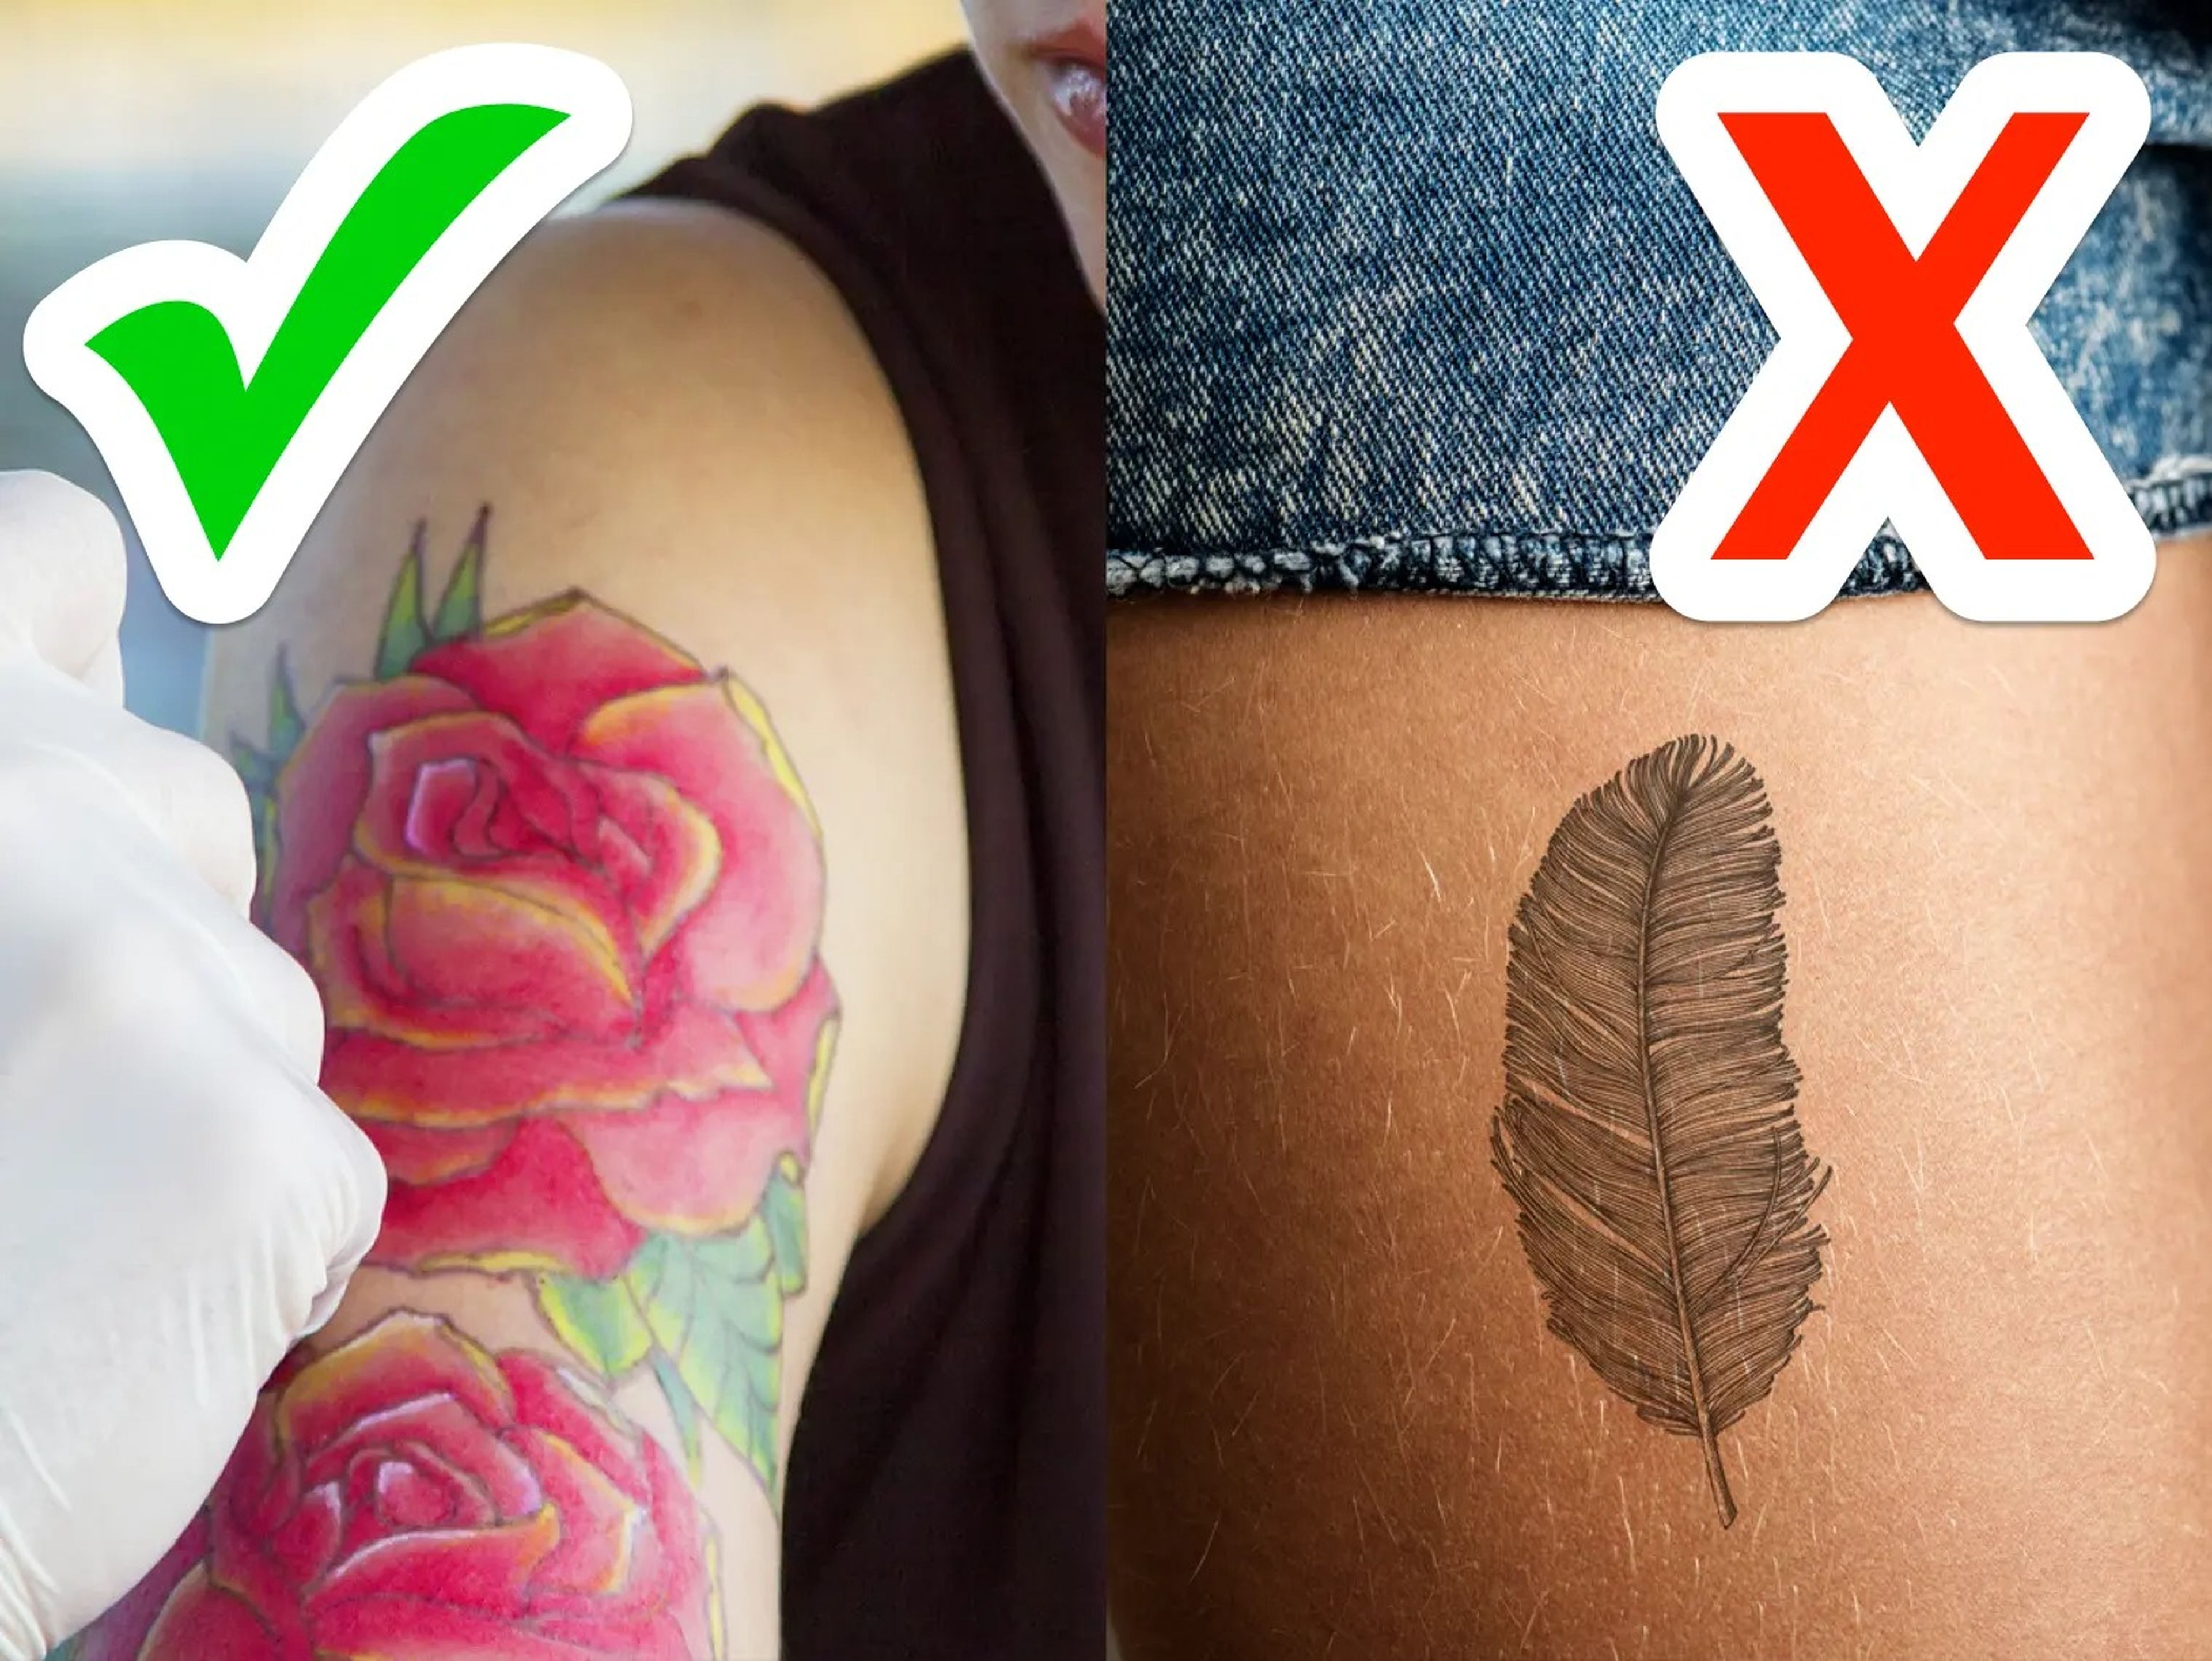 Tatuaje con una rosa frente a tatuaje de una fluma